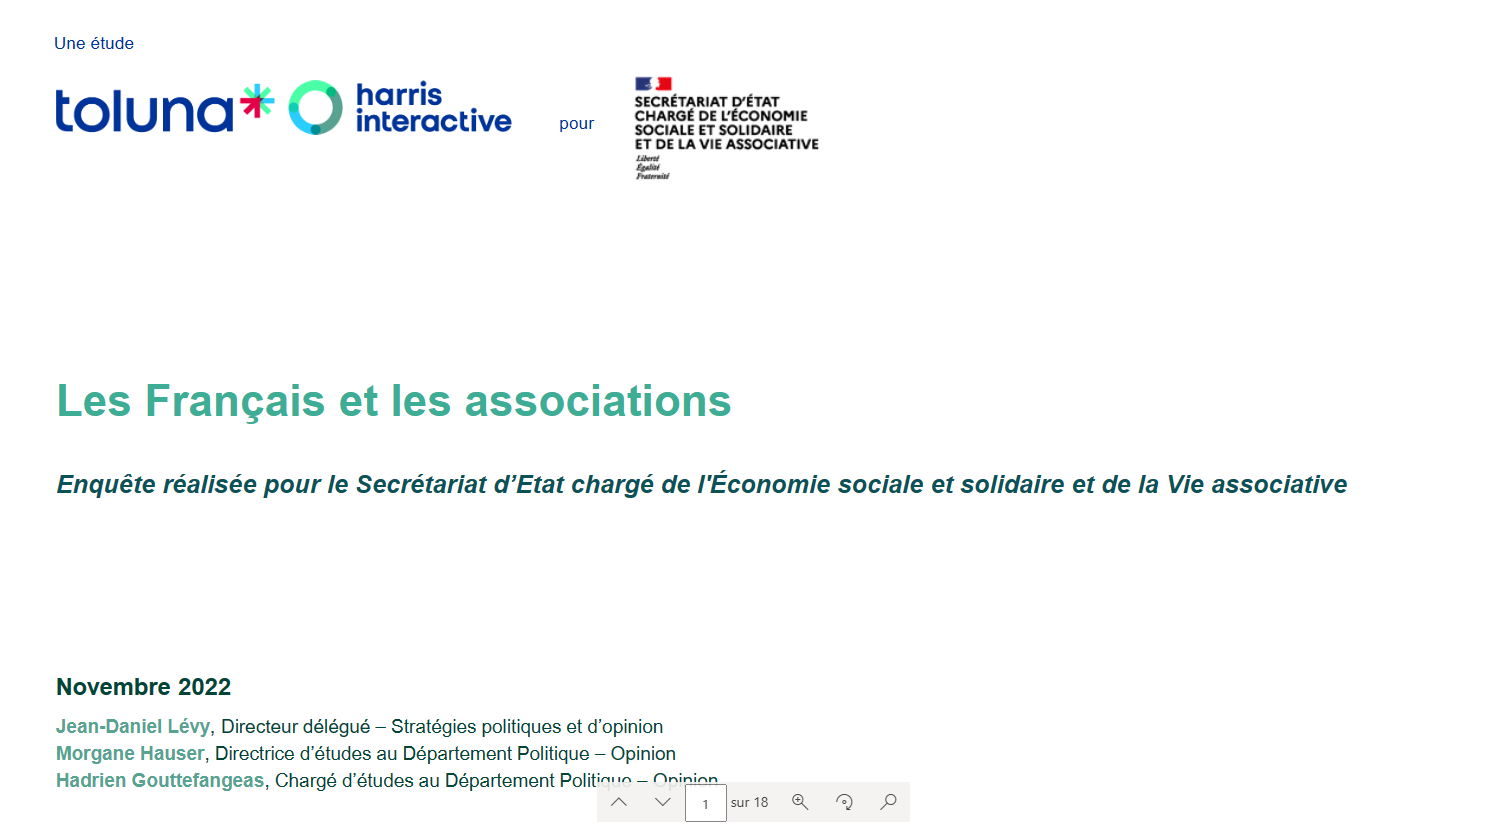 Les Français et les associations : une enquête réalisée pour le Secrétariat d'Etat de l'ESS et la Vie associative